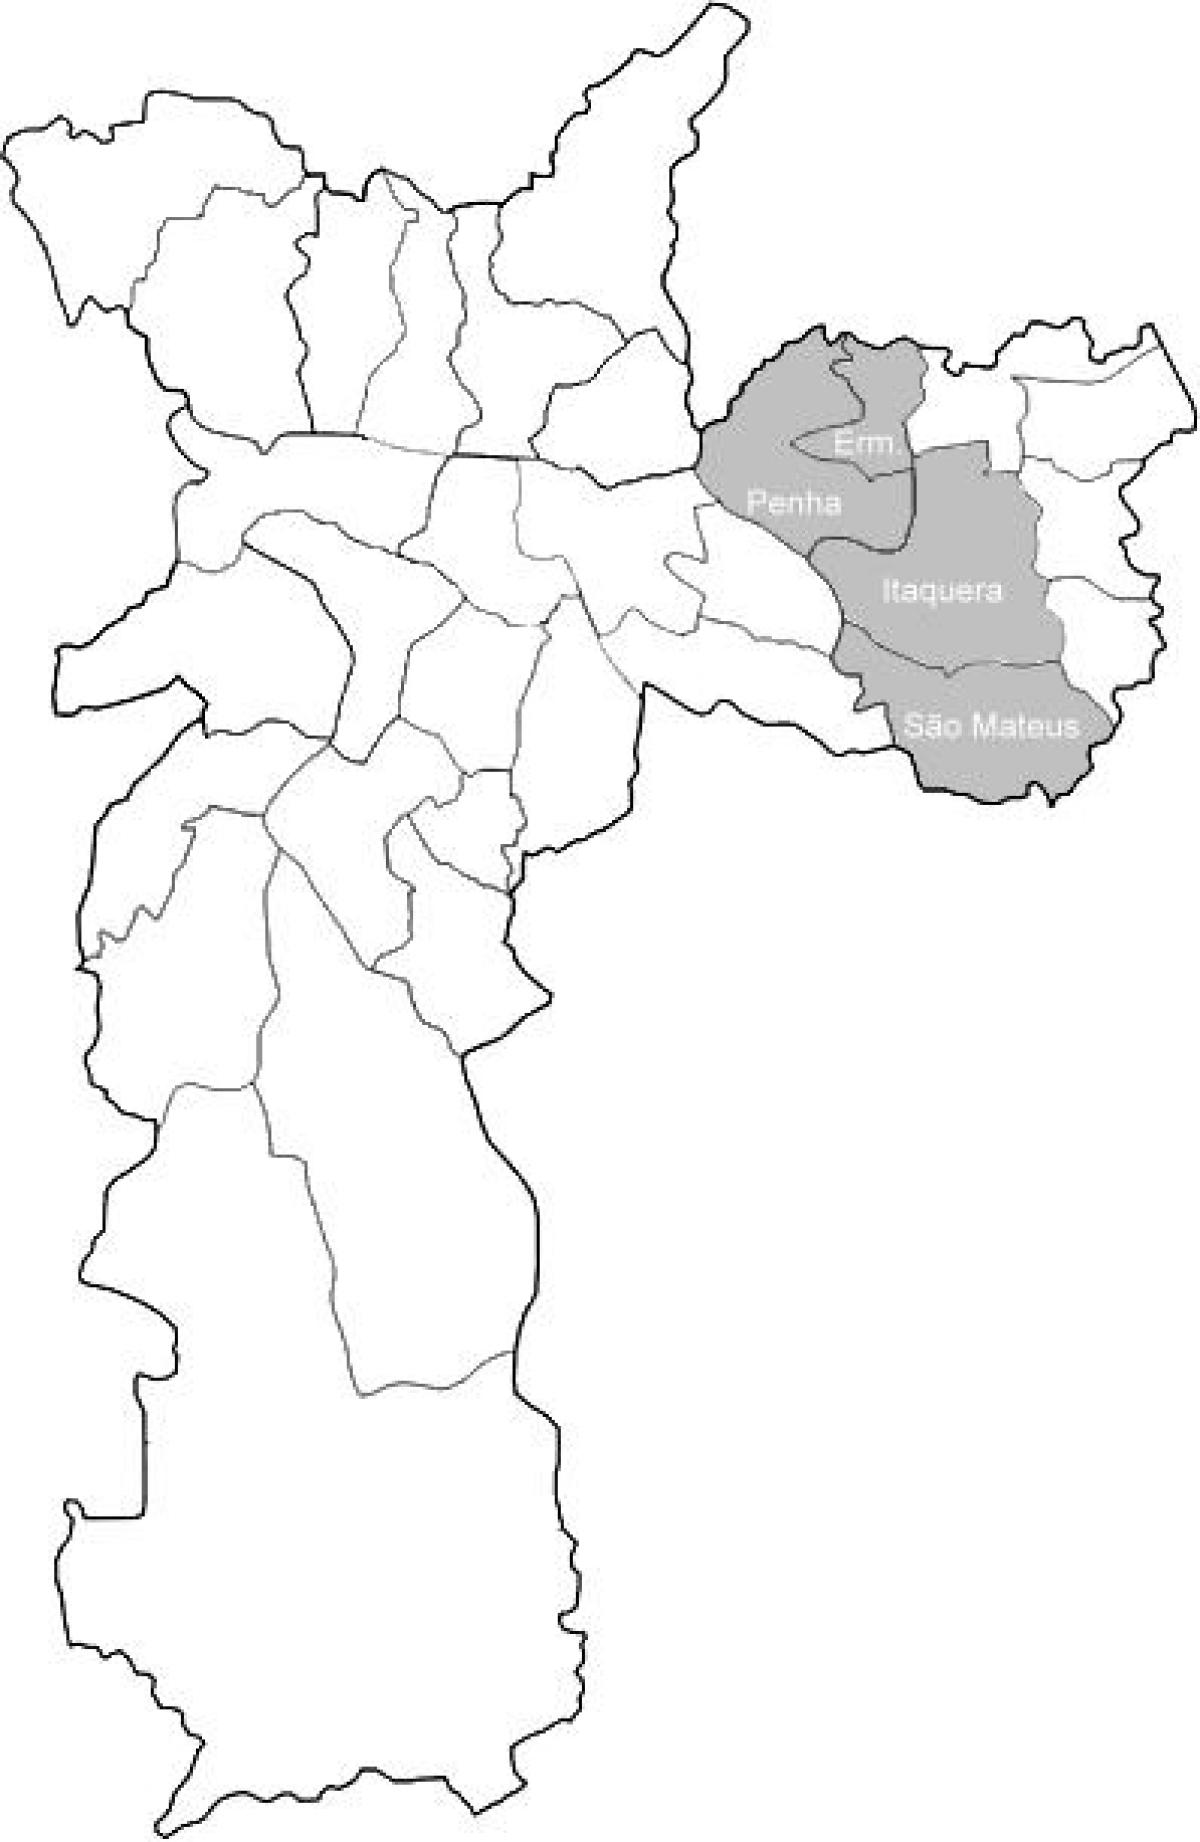 Mapa da zona Leste 1 de São Paulo